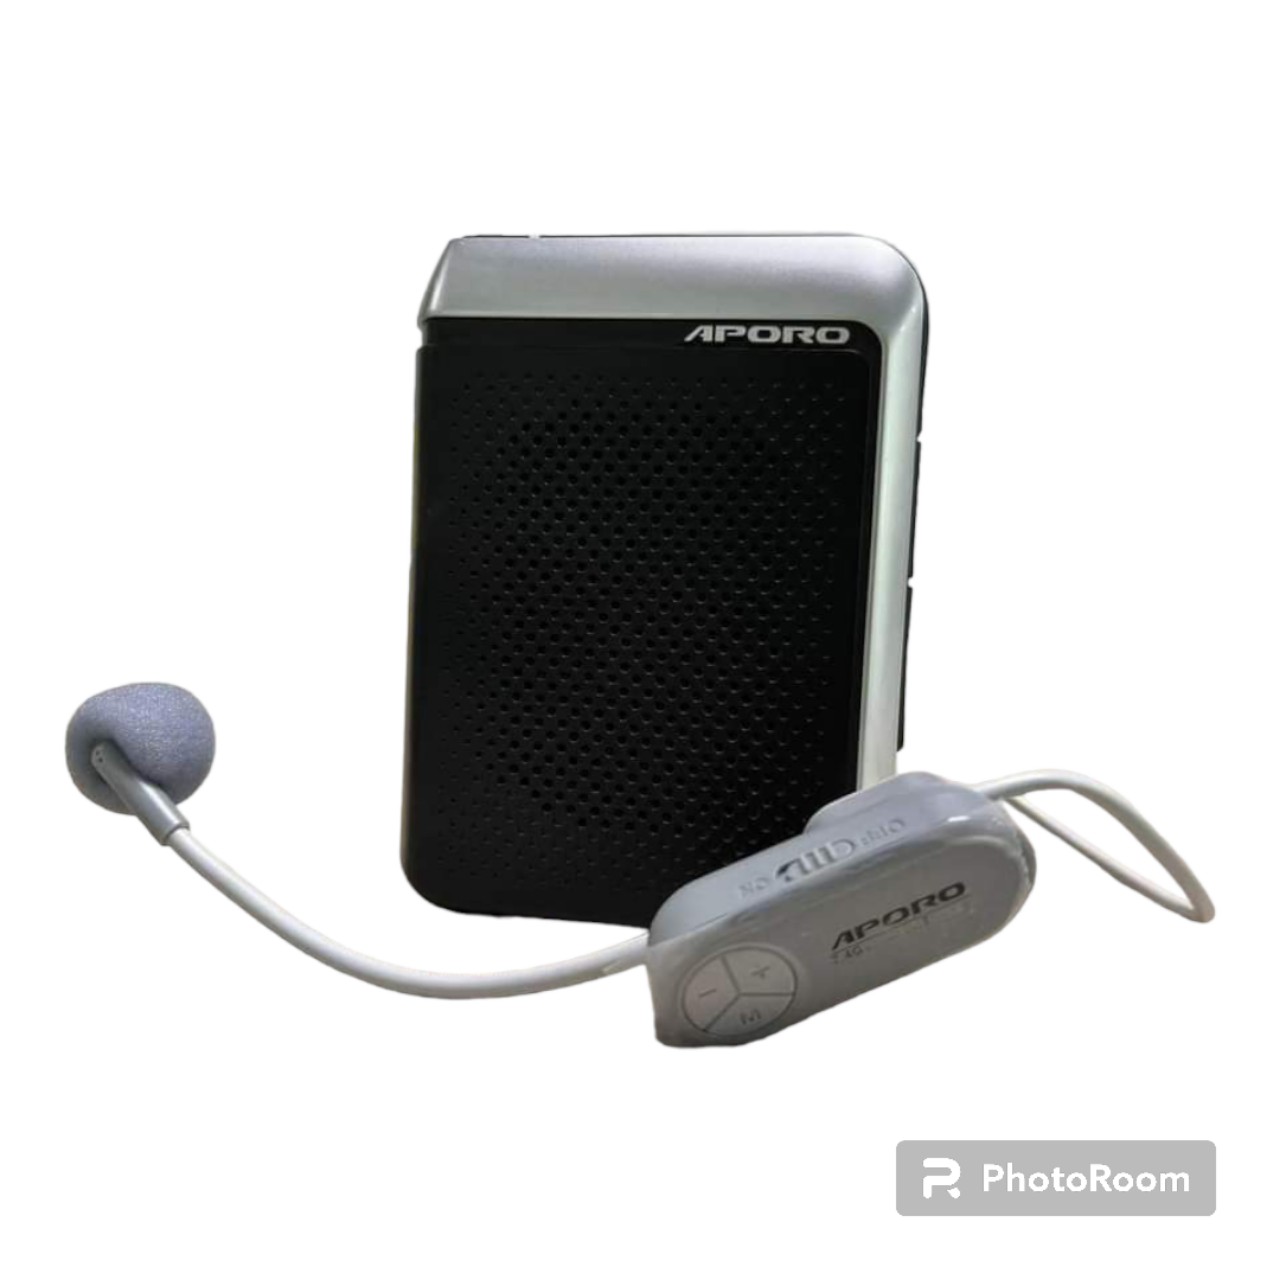 Loa máy trợ giảng không dây Aporo T18 Plus 2.4G Wifi Bluetooth 5.0 Hàng Chính Hãng (Lựa chọn thêm Hộp bảo vệ Aporo)